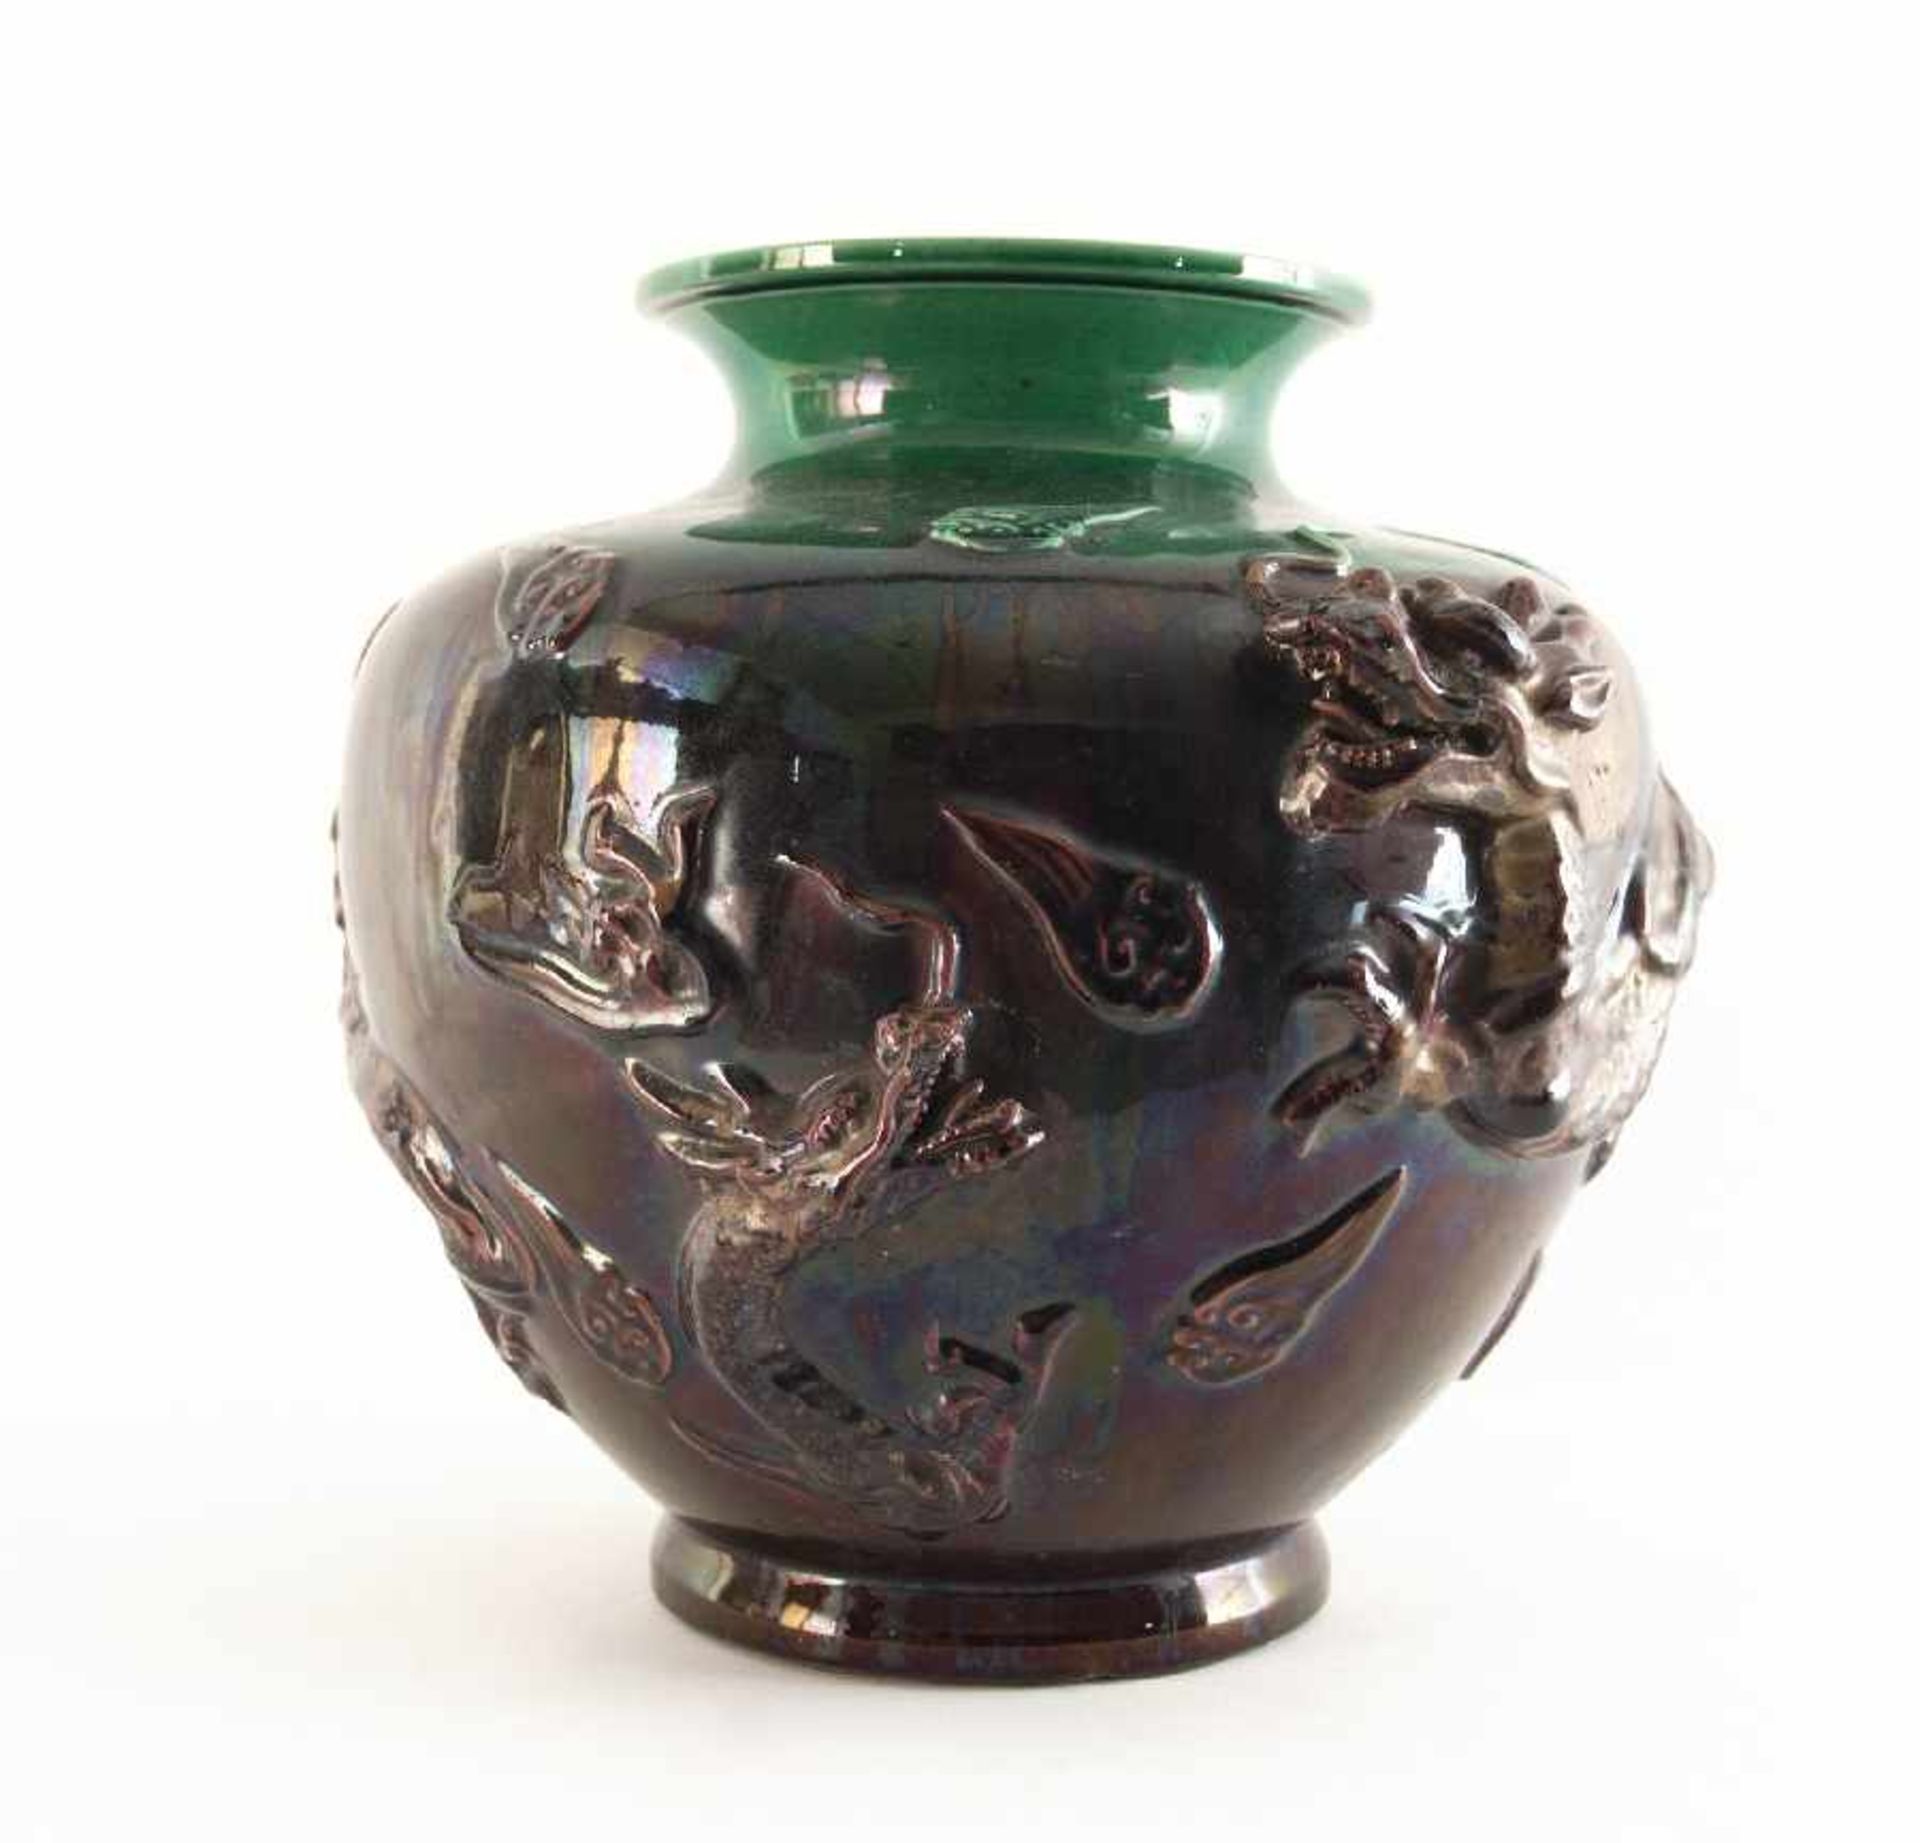 China Vase mit Drachenmotiv Keramik, weißlicher Scherben, farbig glasiert; H 30,5 cm, Dm 30,5 cm